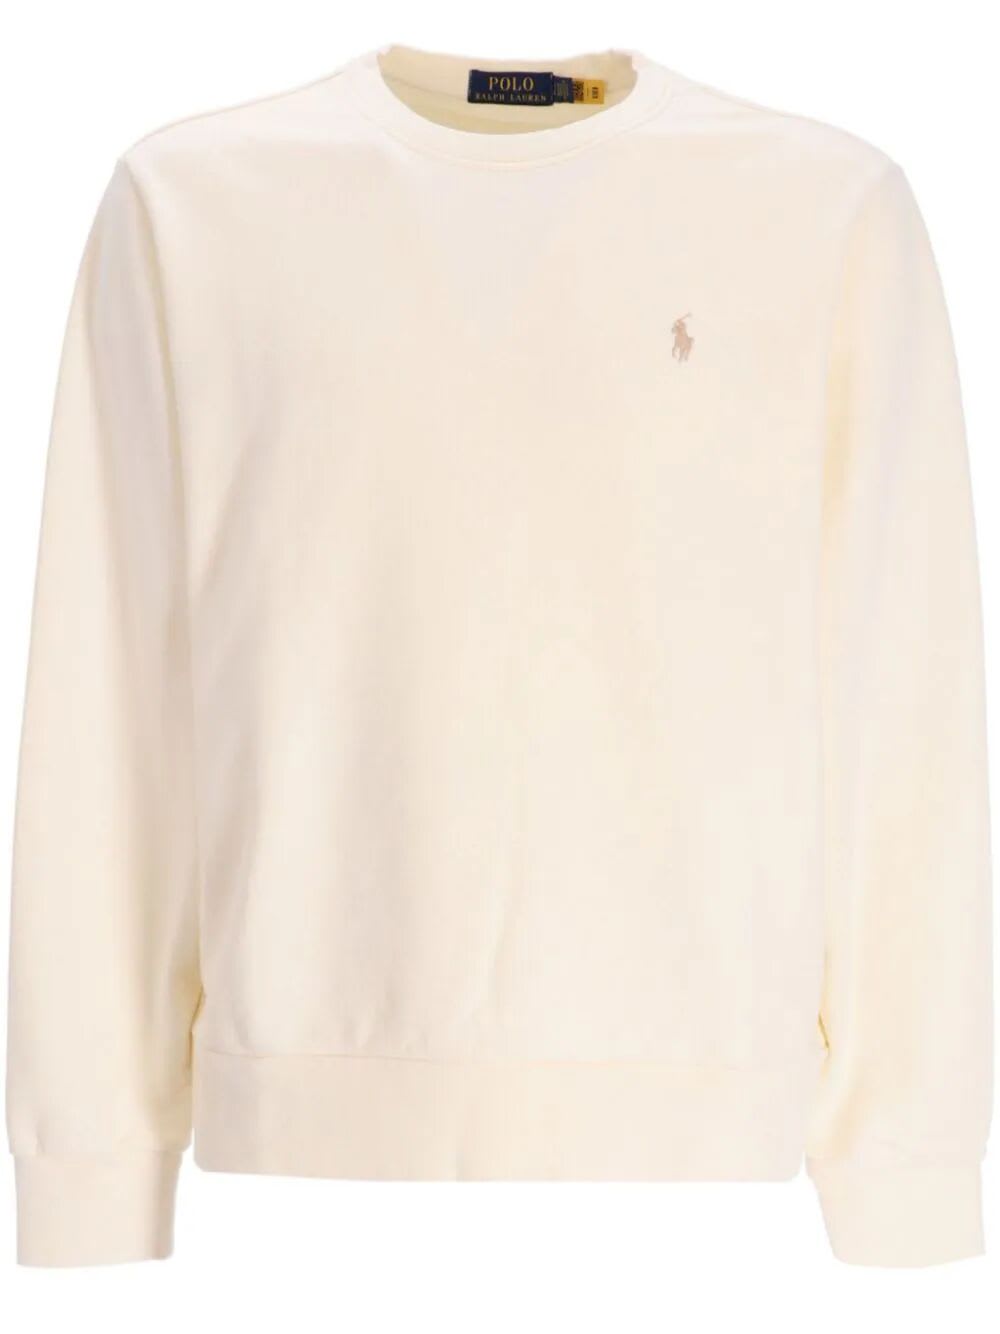 Polo Ralph Lauren Crew Neck Sweatshirt In Clubhouse Cream